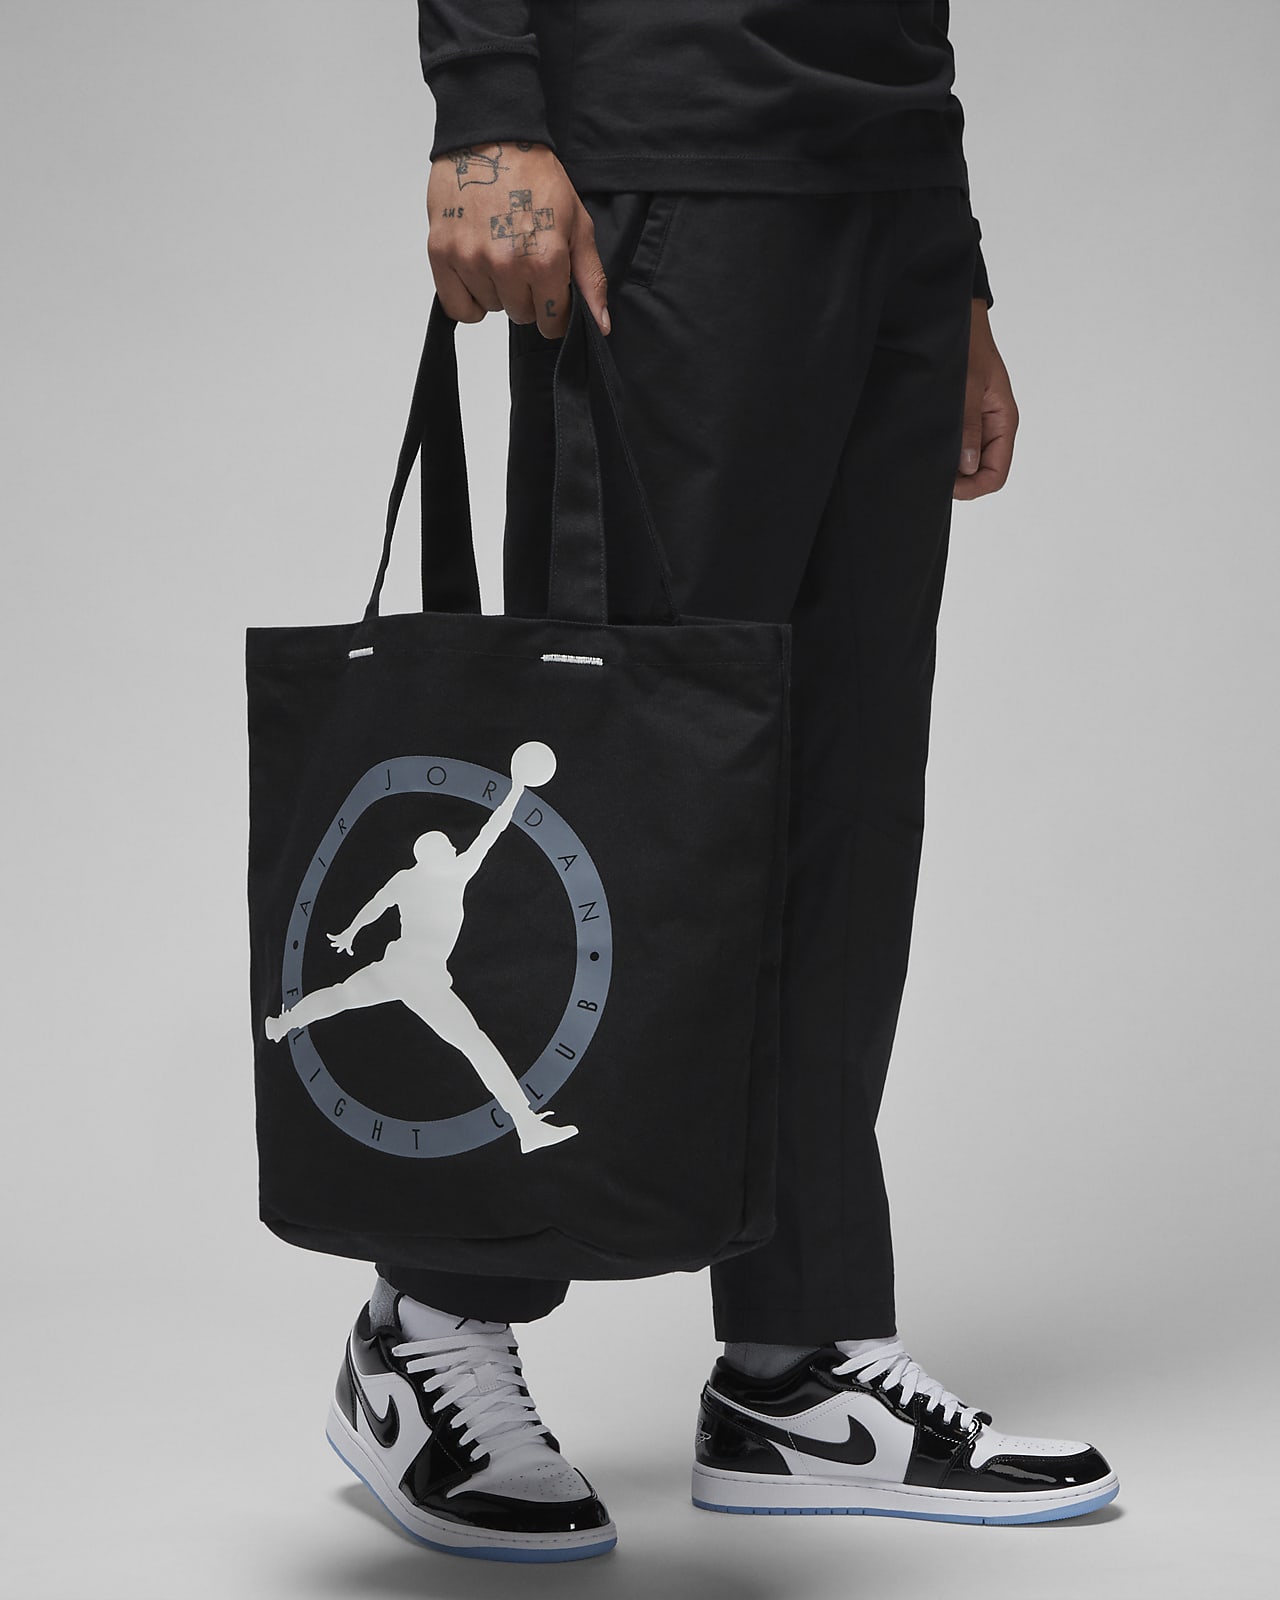 Nike Tote Bag - $15 - From Jordan